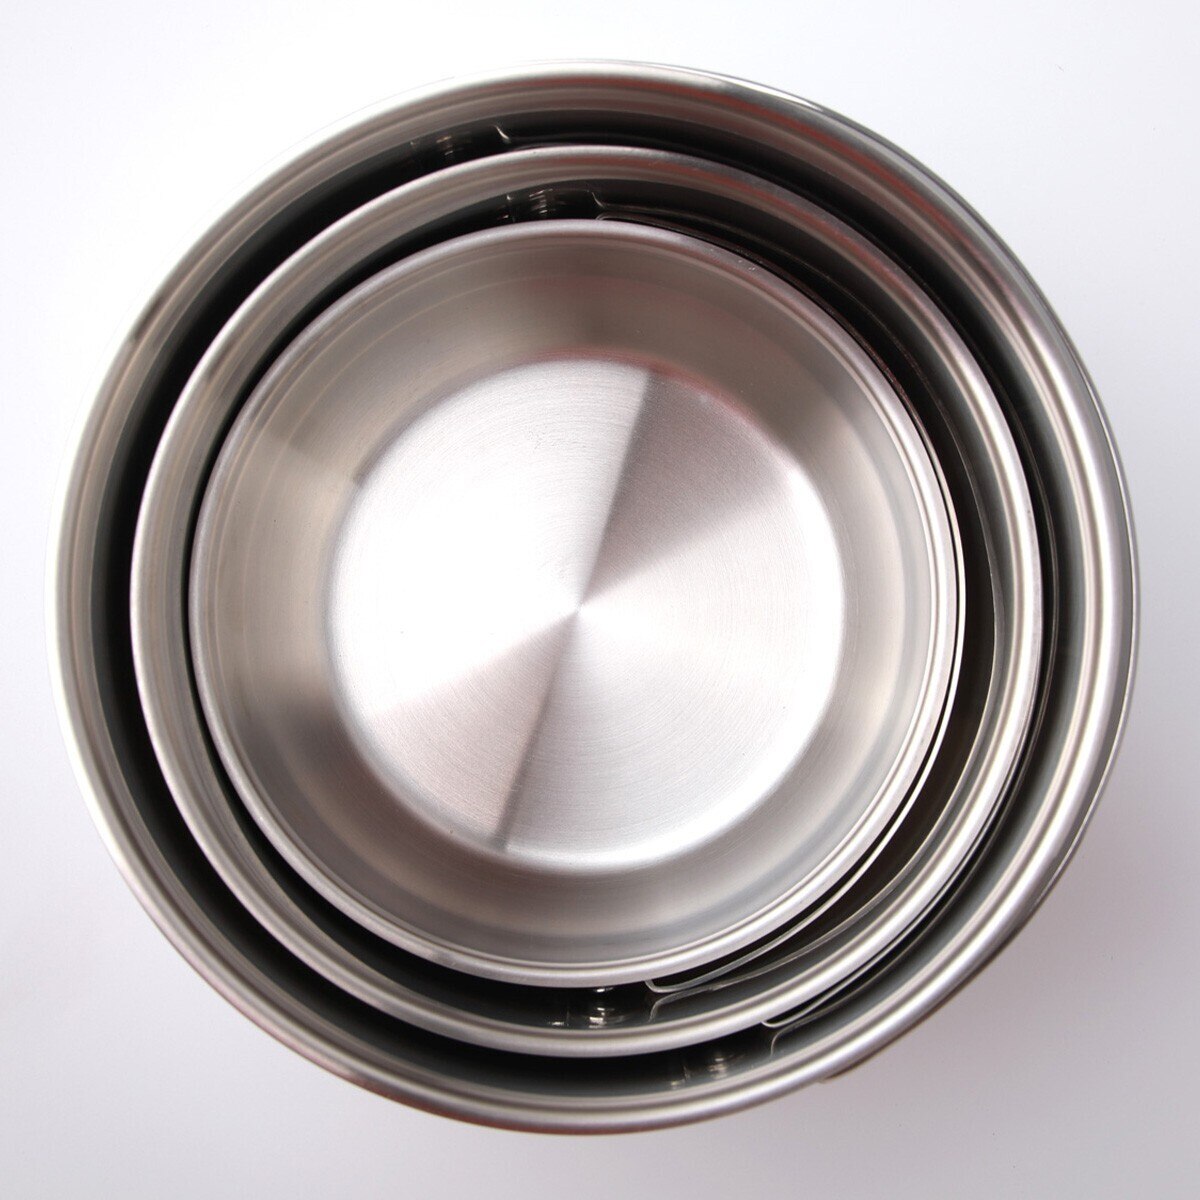 可收納湯鍋含蓋 6件組 含鍋體 X 3 + 鍋蓋 X 3